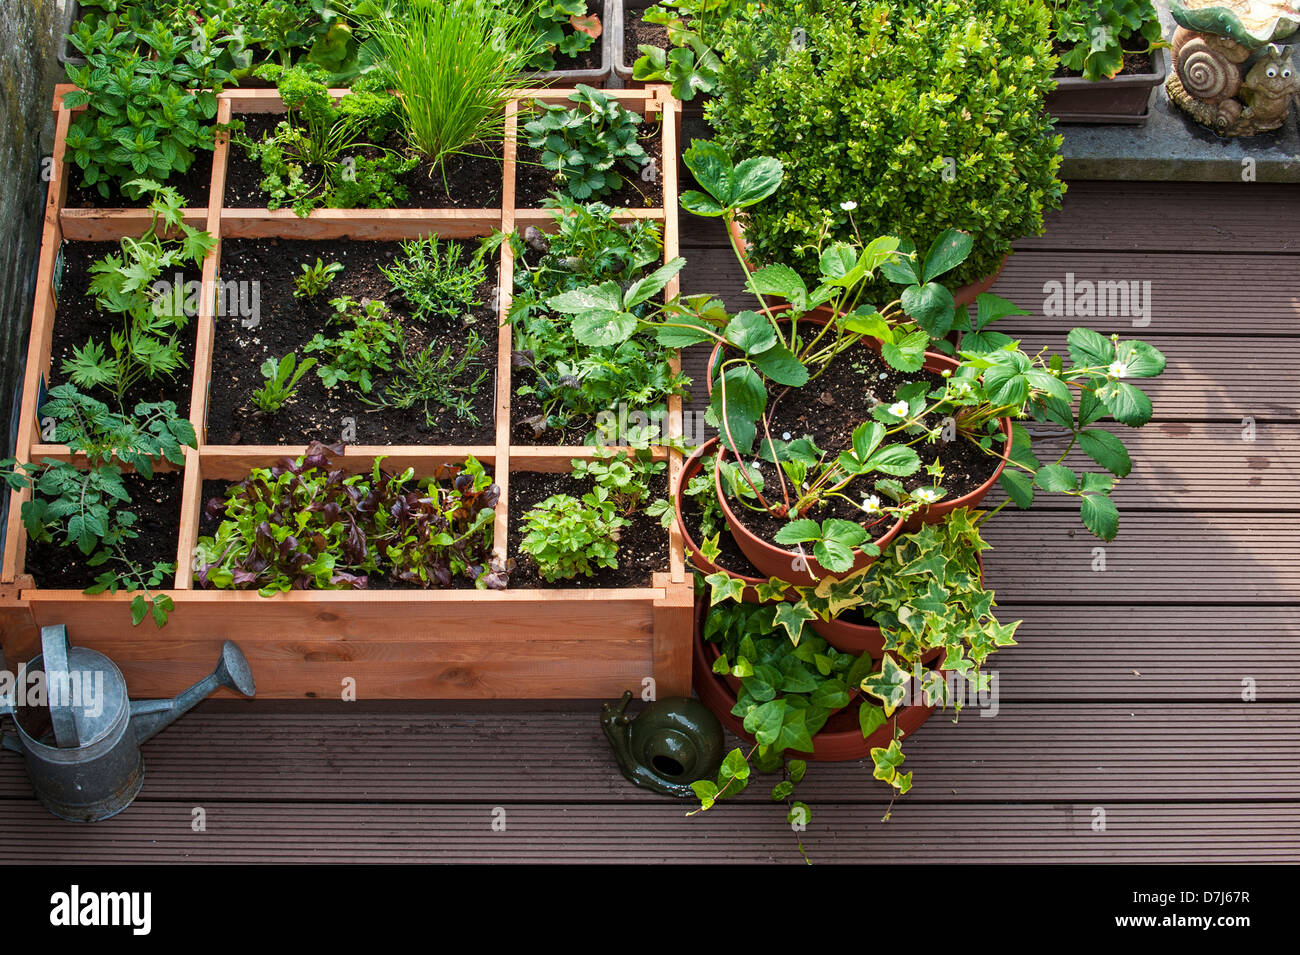 Pied carré par jardinage planter des fleurs, des herbes et des légumes en boîte bois sur balcon Banque D'Images